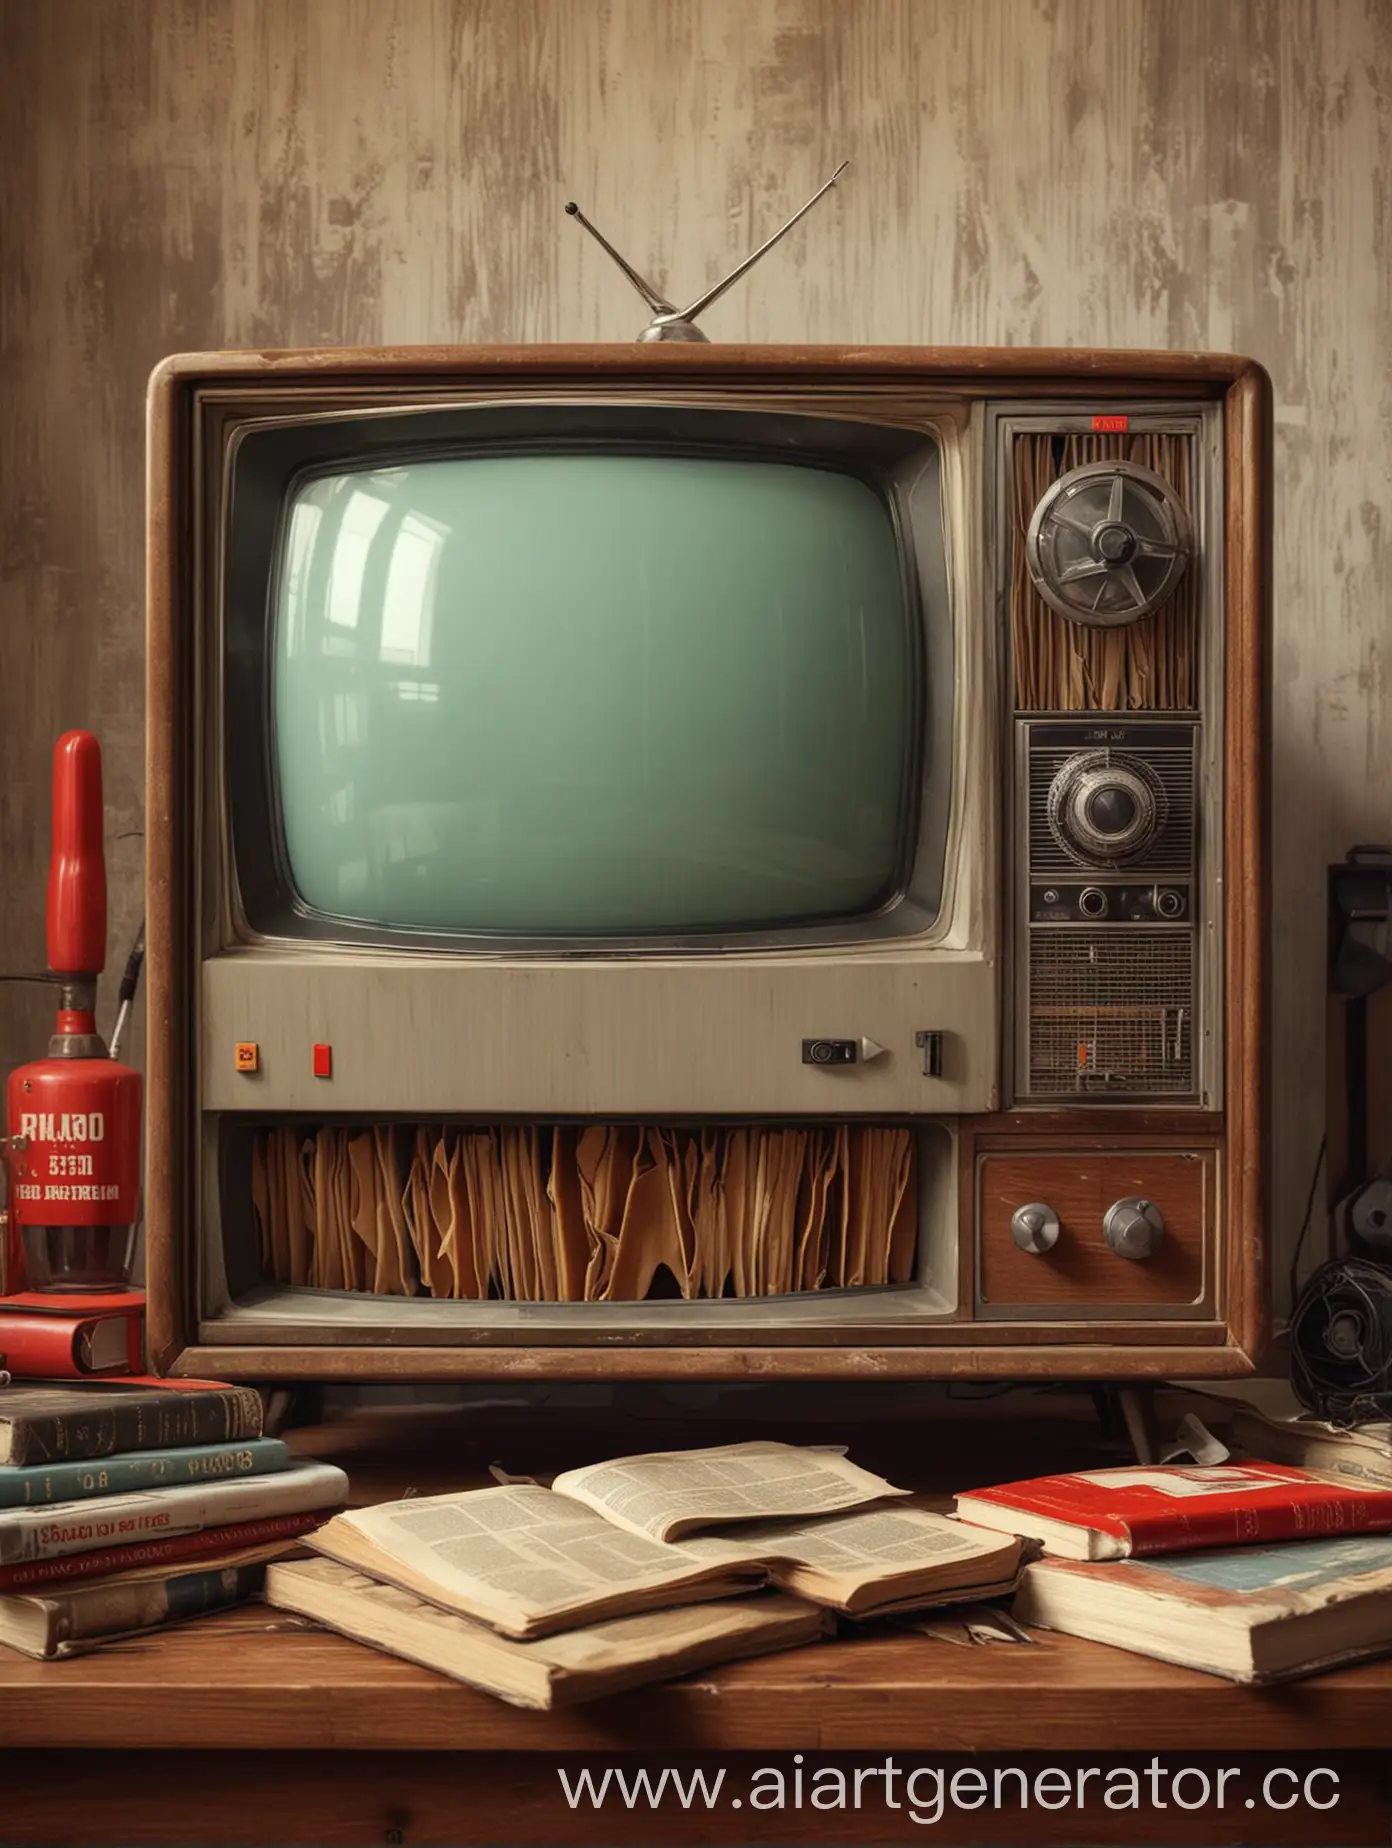 Создай изображение с советским телевизором крупным планом, сверху на нем должны стоять книги сделай задник изображения в стиле советский квартиры 60-х годов
